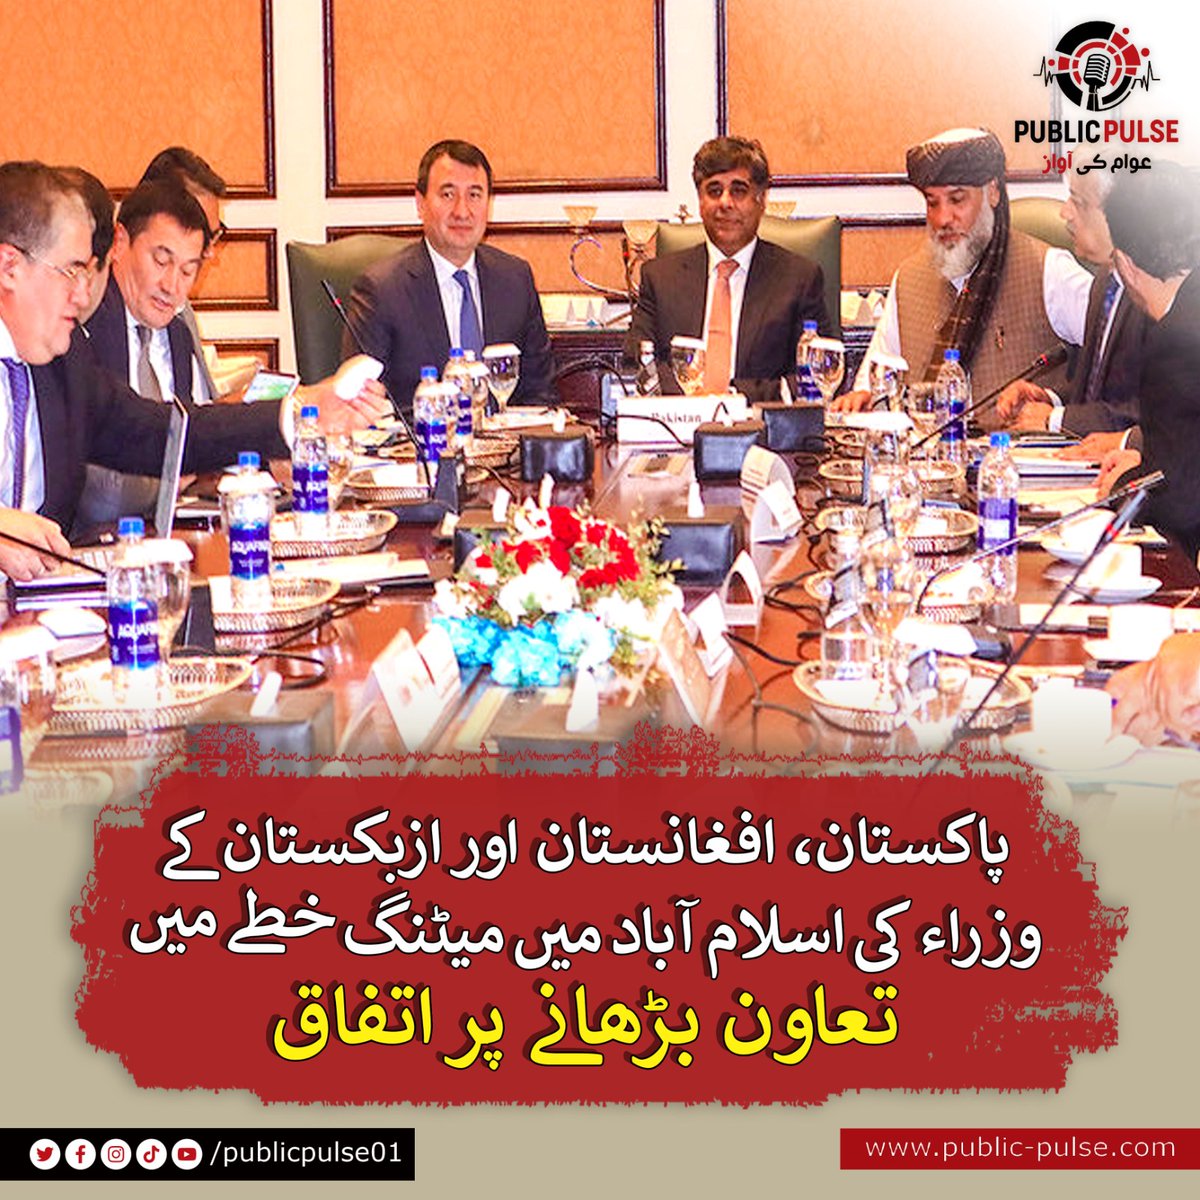 پاکستان اور افغانستان کے کامرس منسٹرز اور ازبکستان کے نائب وزیر اعظم  نے میٹنگ میں شرکت کی۔
ملاقات میں ریلوے کونیکشنز، ٹریڈ ٹرانزٹ لاجسٹکس، ٹیرف کے شعبوں میں تعاون پر تبادلہ خیال کیا گیا۔
#PakAfghan #Uzbekistan #Trade #Tariff #Logistics